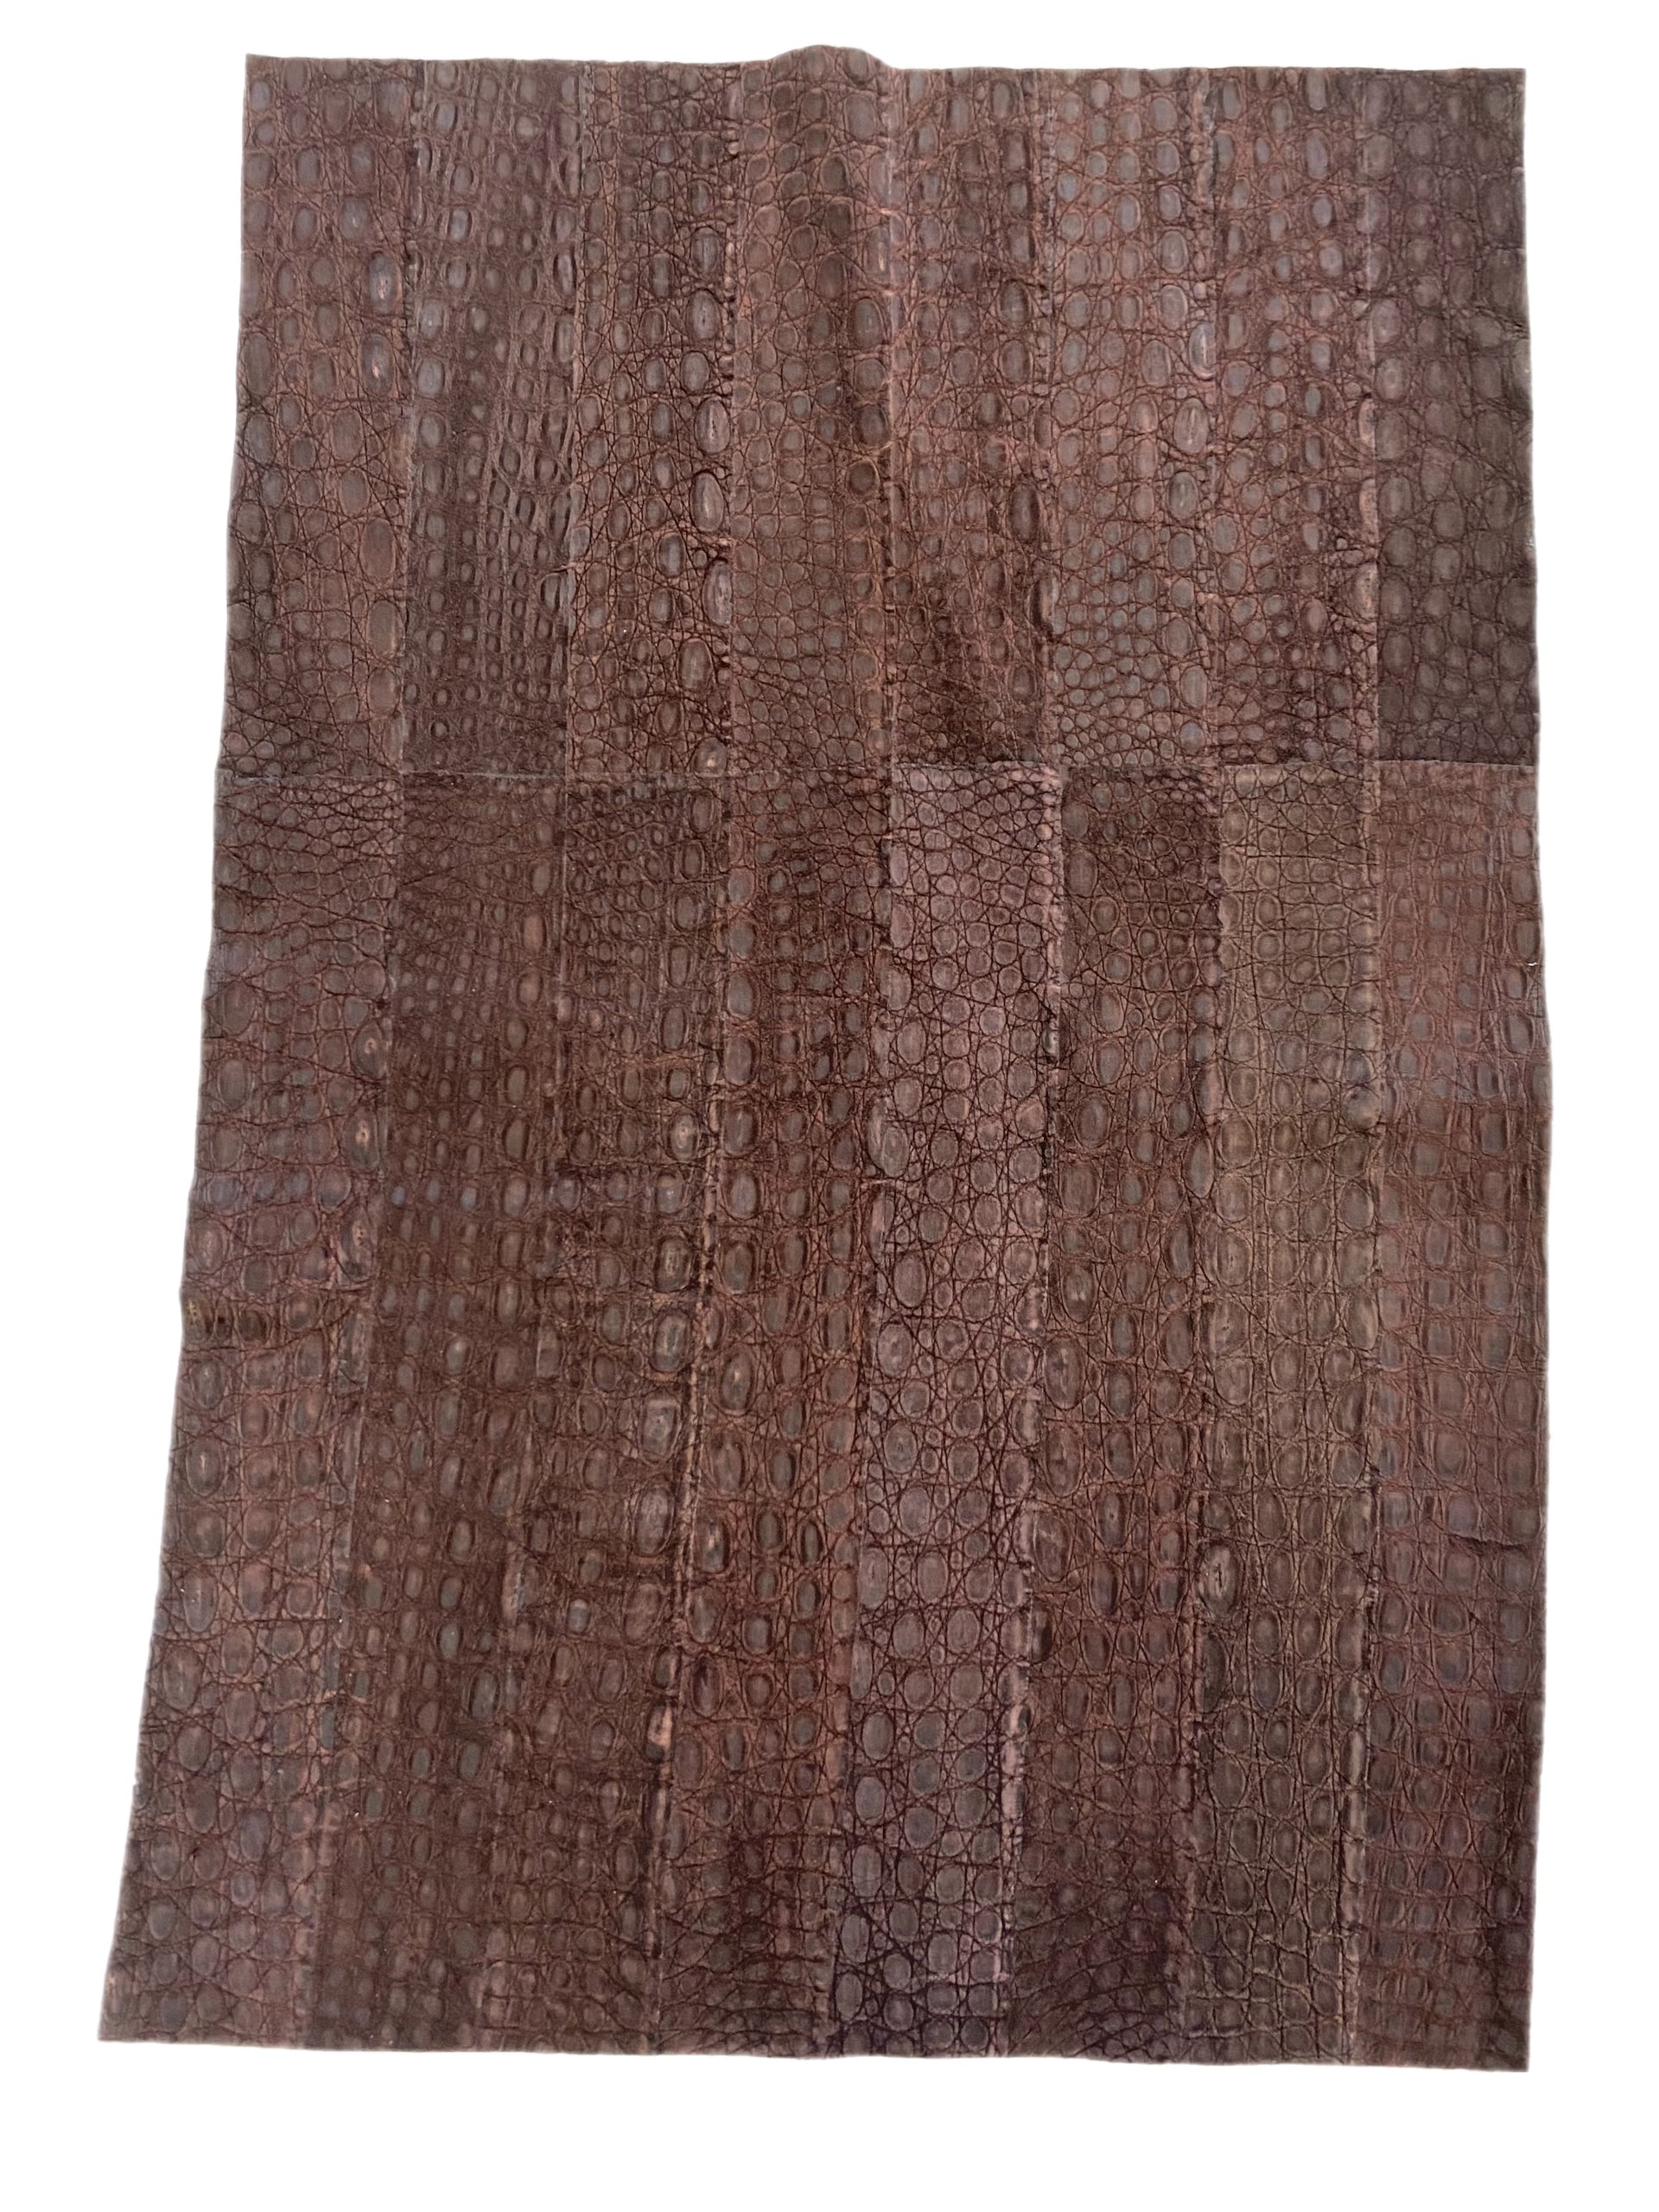 80 X 50 Cm Dark Brown Nubuck Crocodile Leather Panel